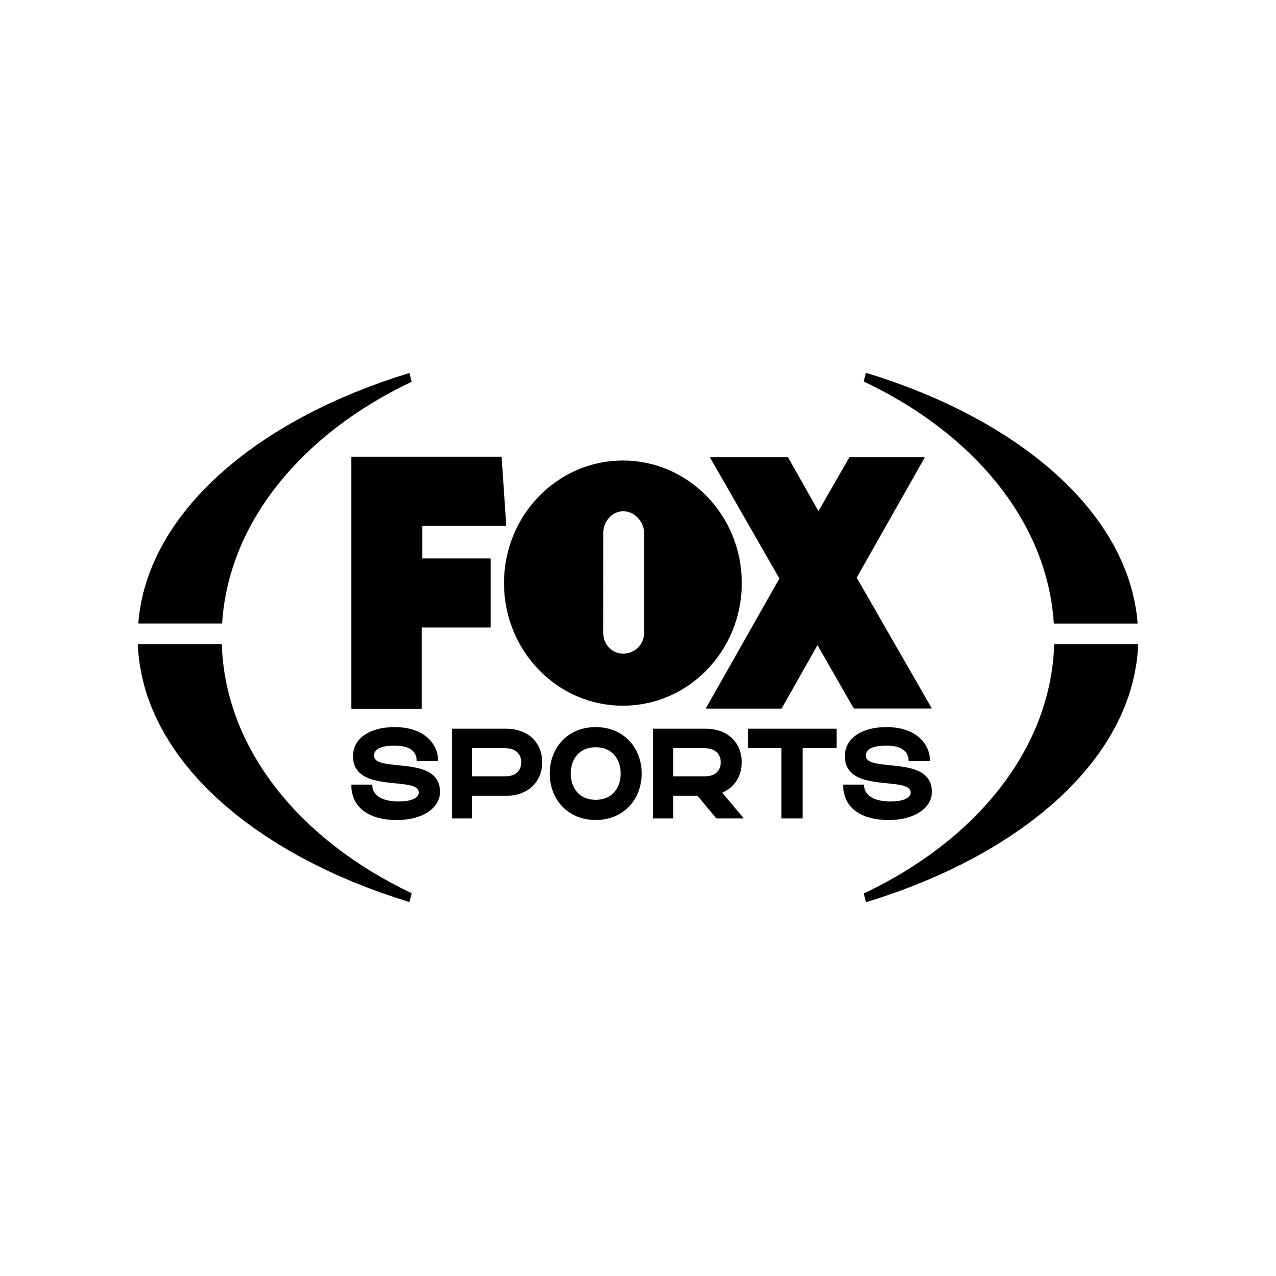 Fox Sports bw.jpg